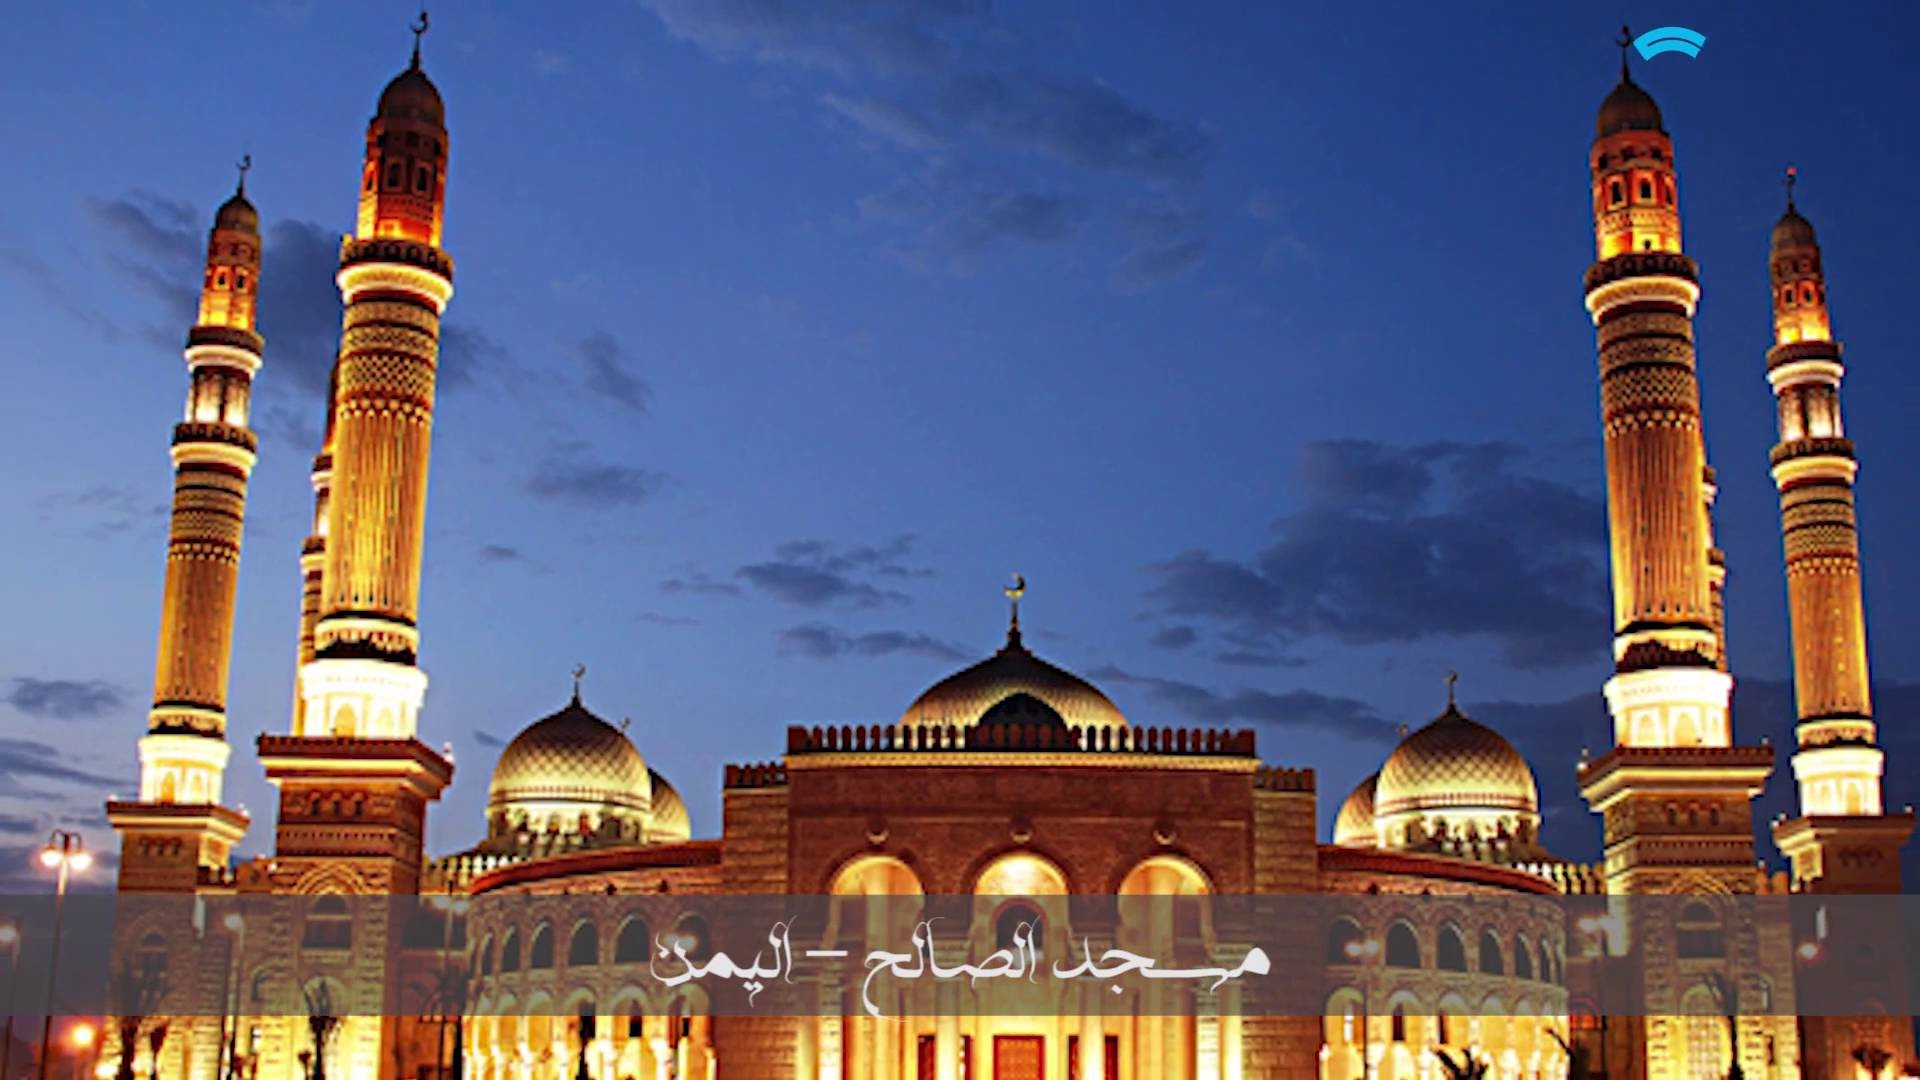 اكبر المساجد , بيوت الله في بقاع الارض - صور دينيه اسلامية